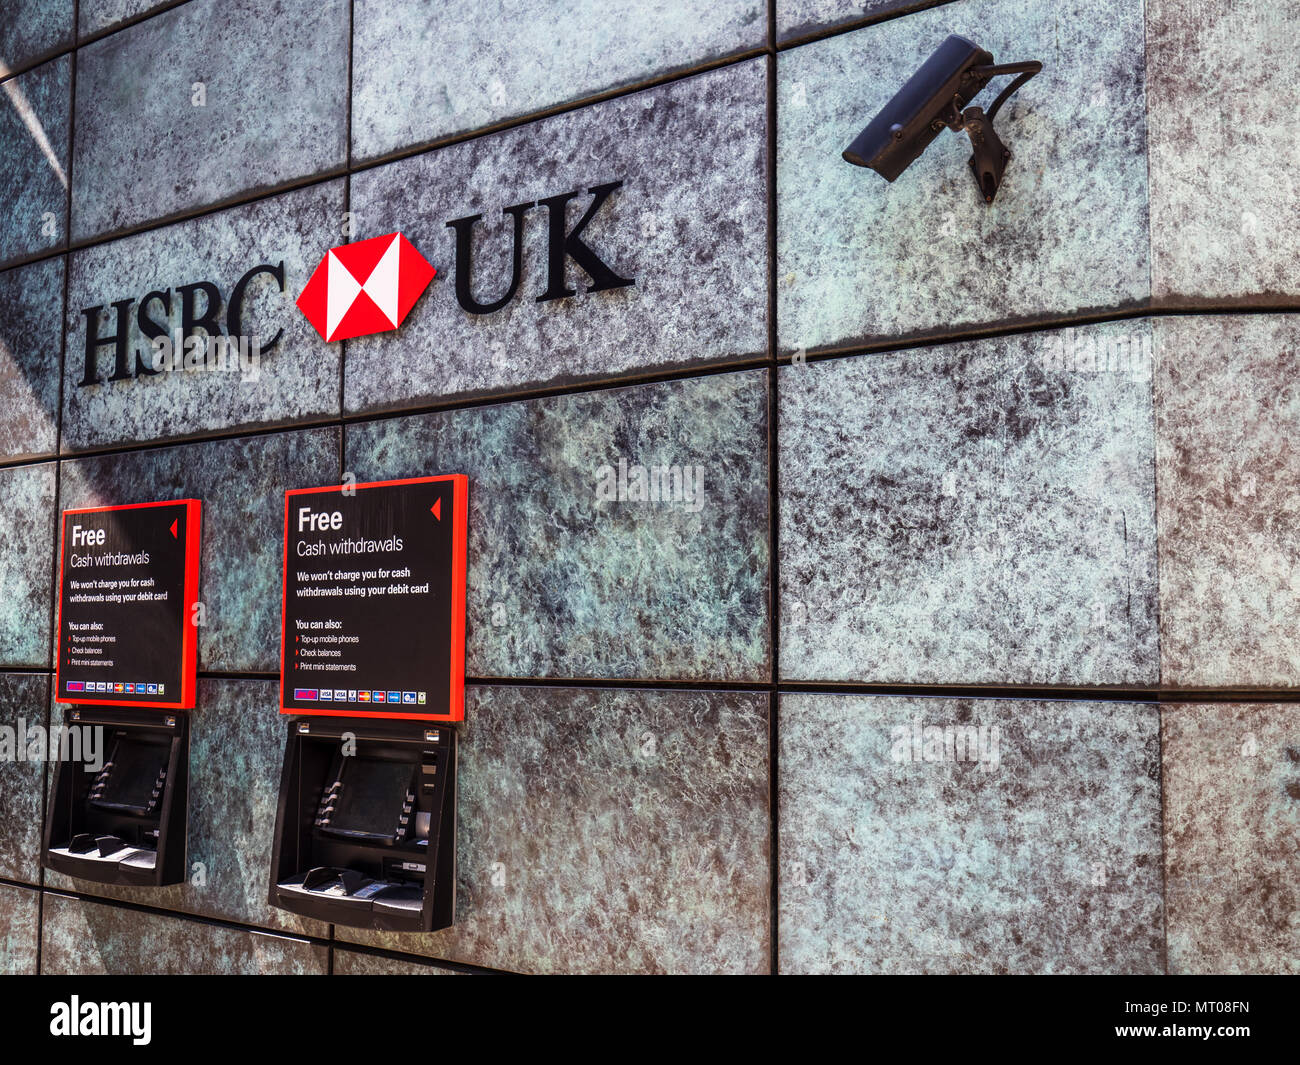 Sécurité bancaire - moniteurs CCTV guichets automatiques de la HSBC dans la ville de London Financial District Banque D'Images